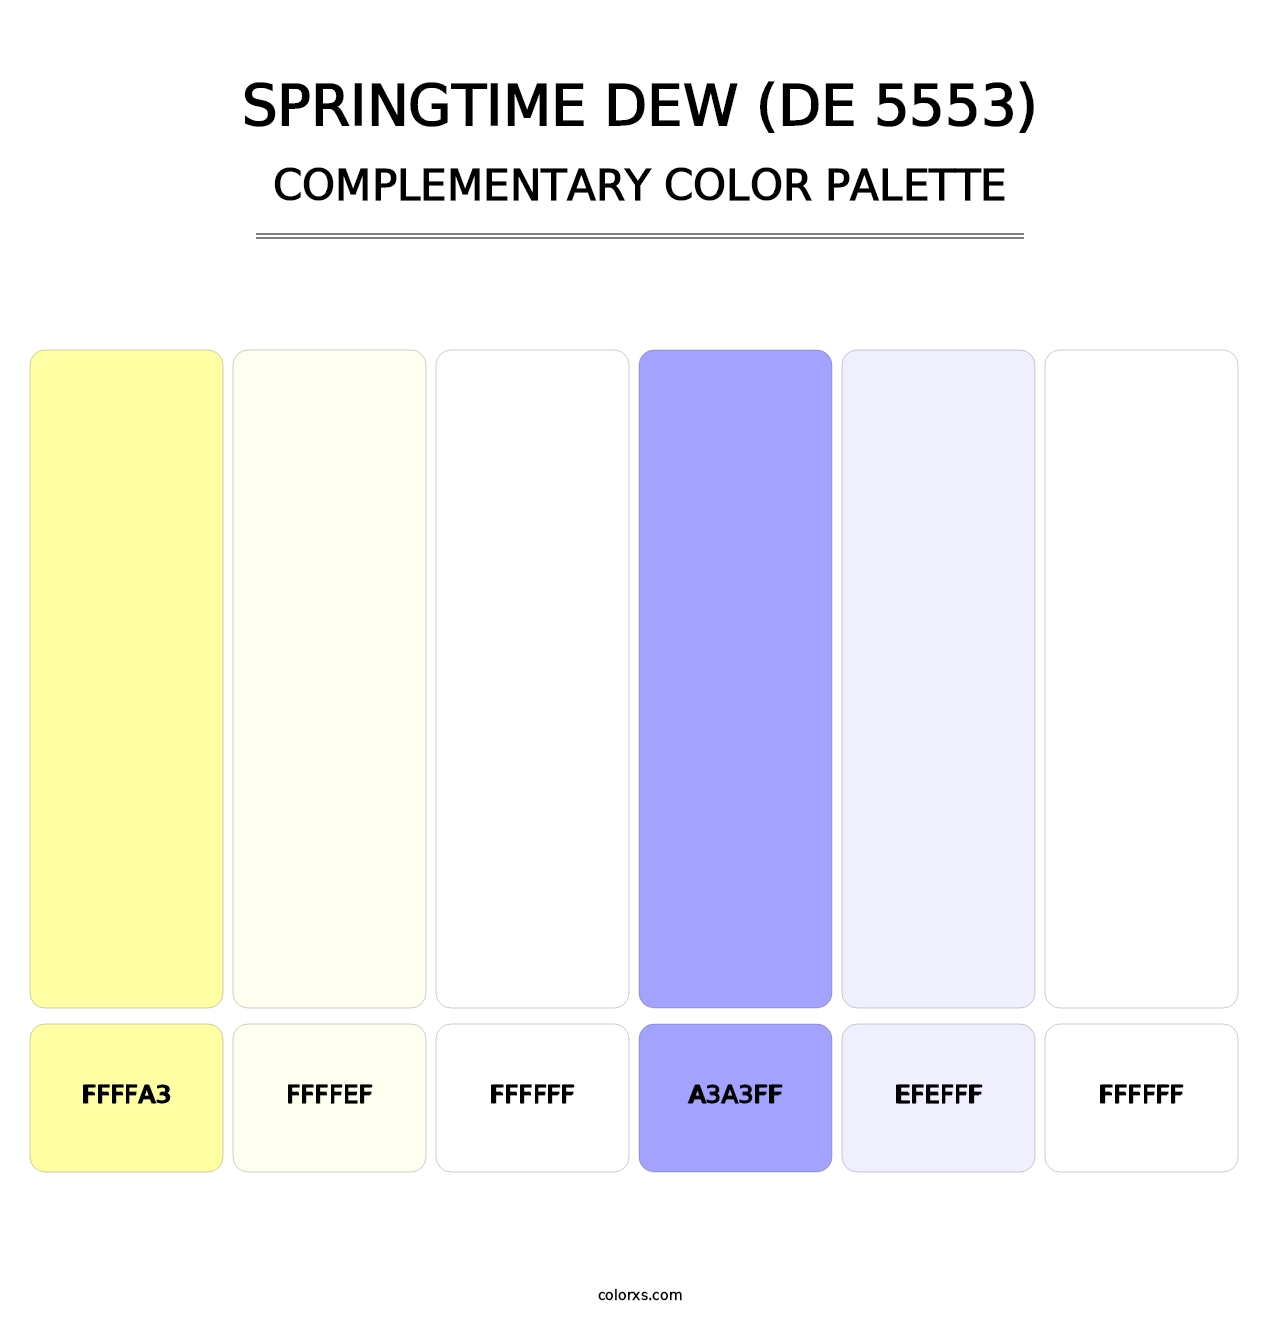 Springtime Dew (DE 5553) - Complementary Color Palette